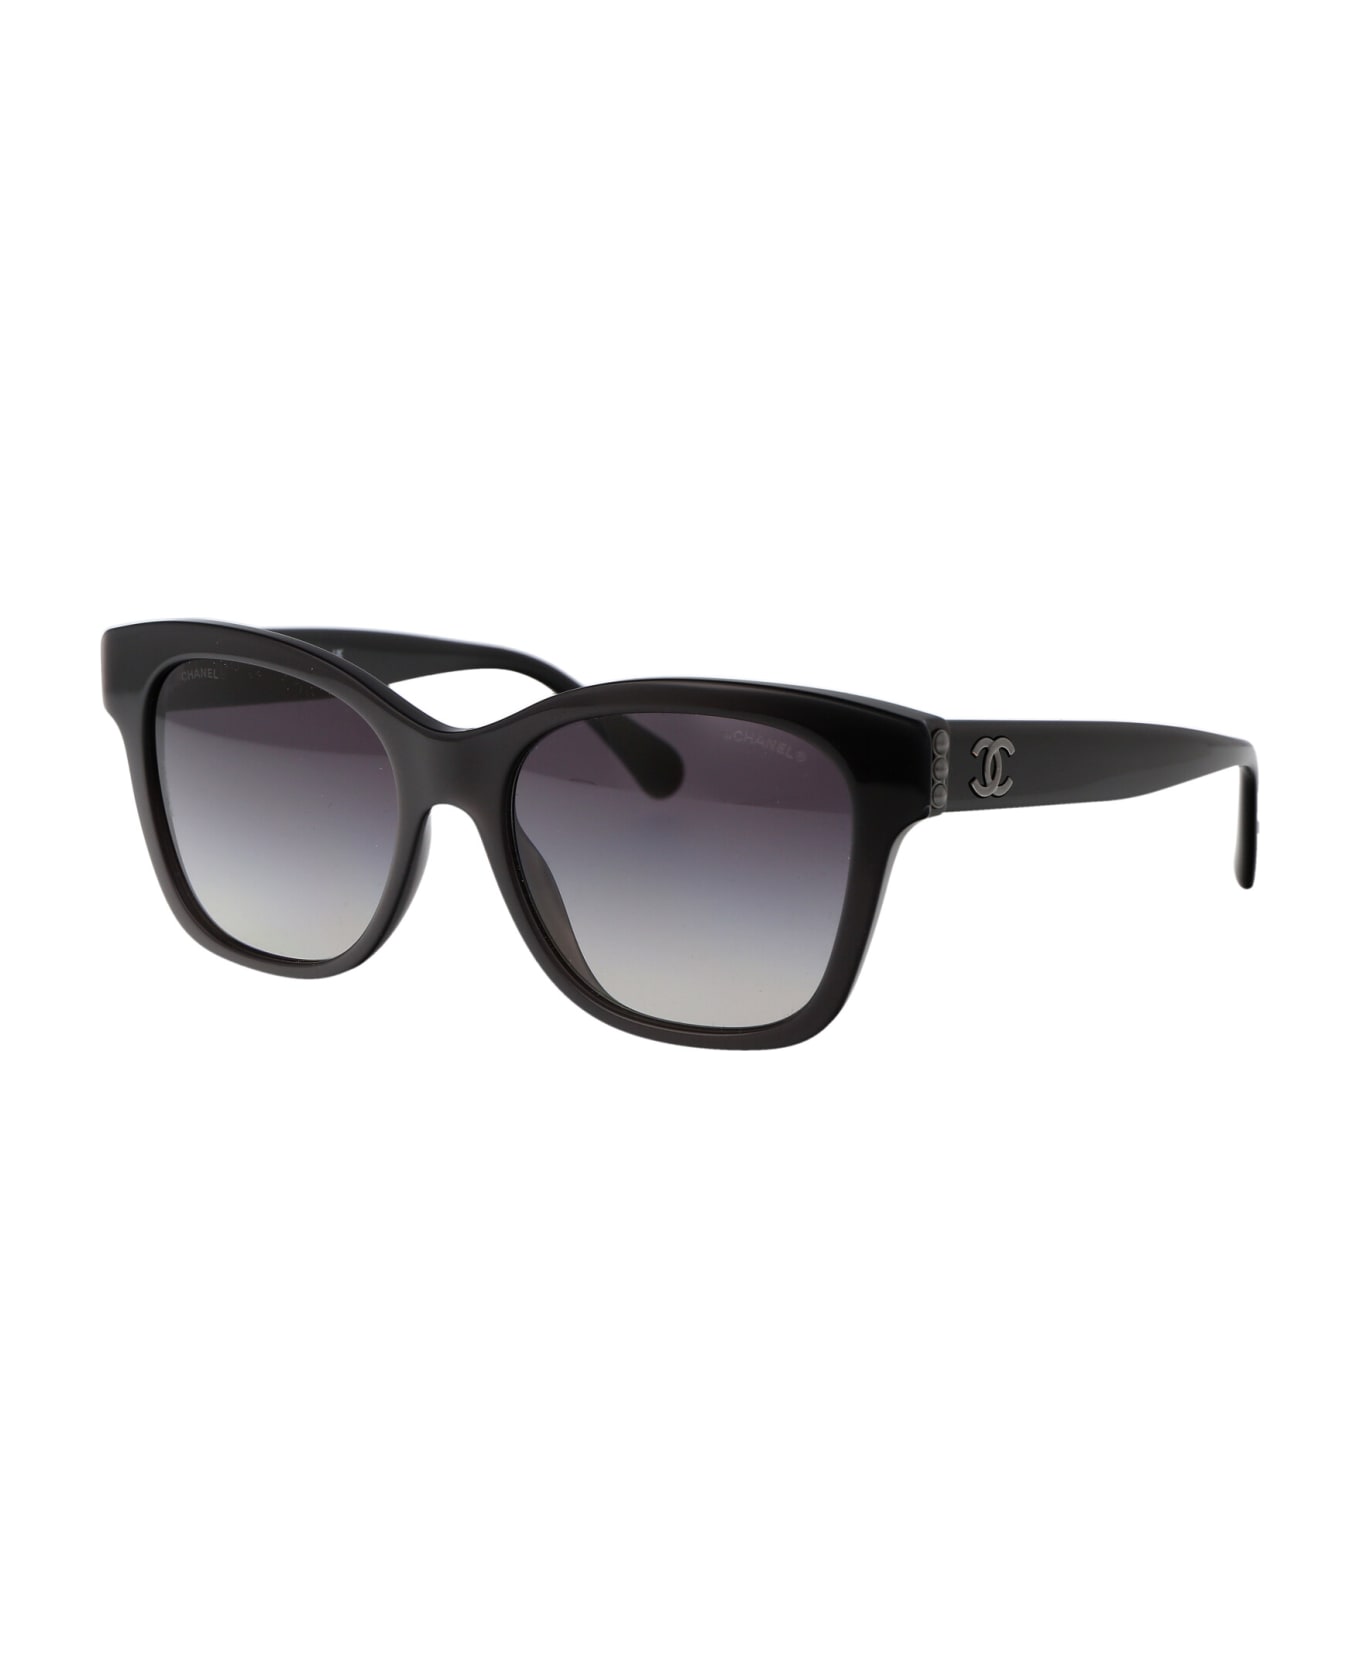 Chanel 0ch5482h Sunglasses - 1716S6